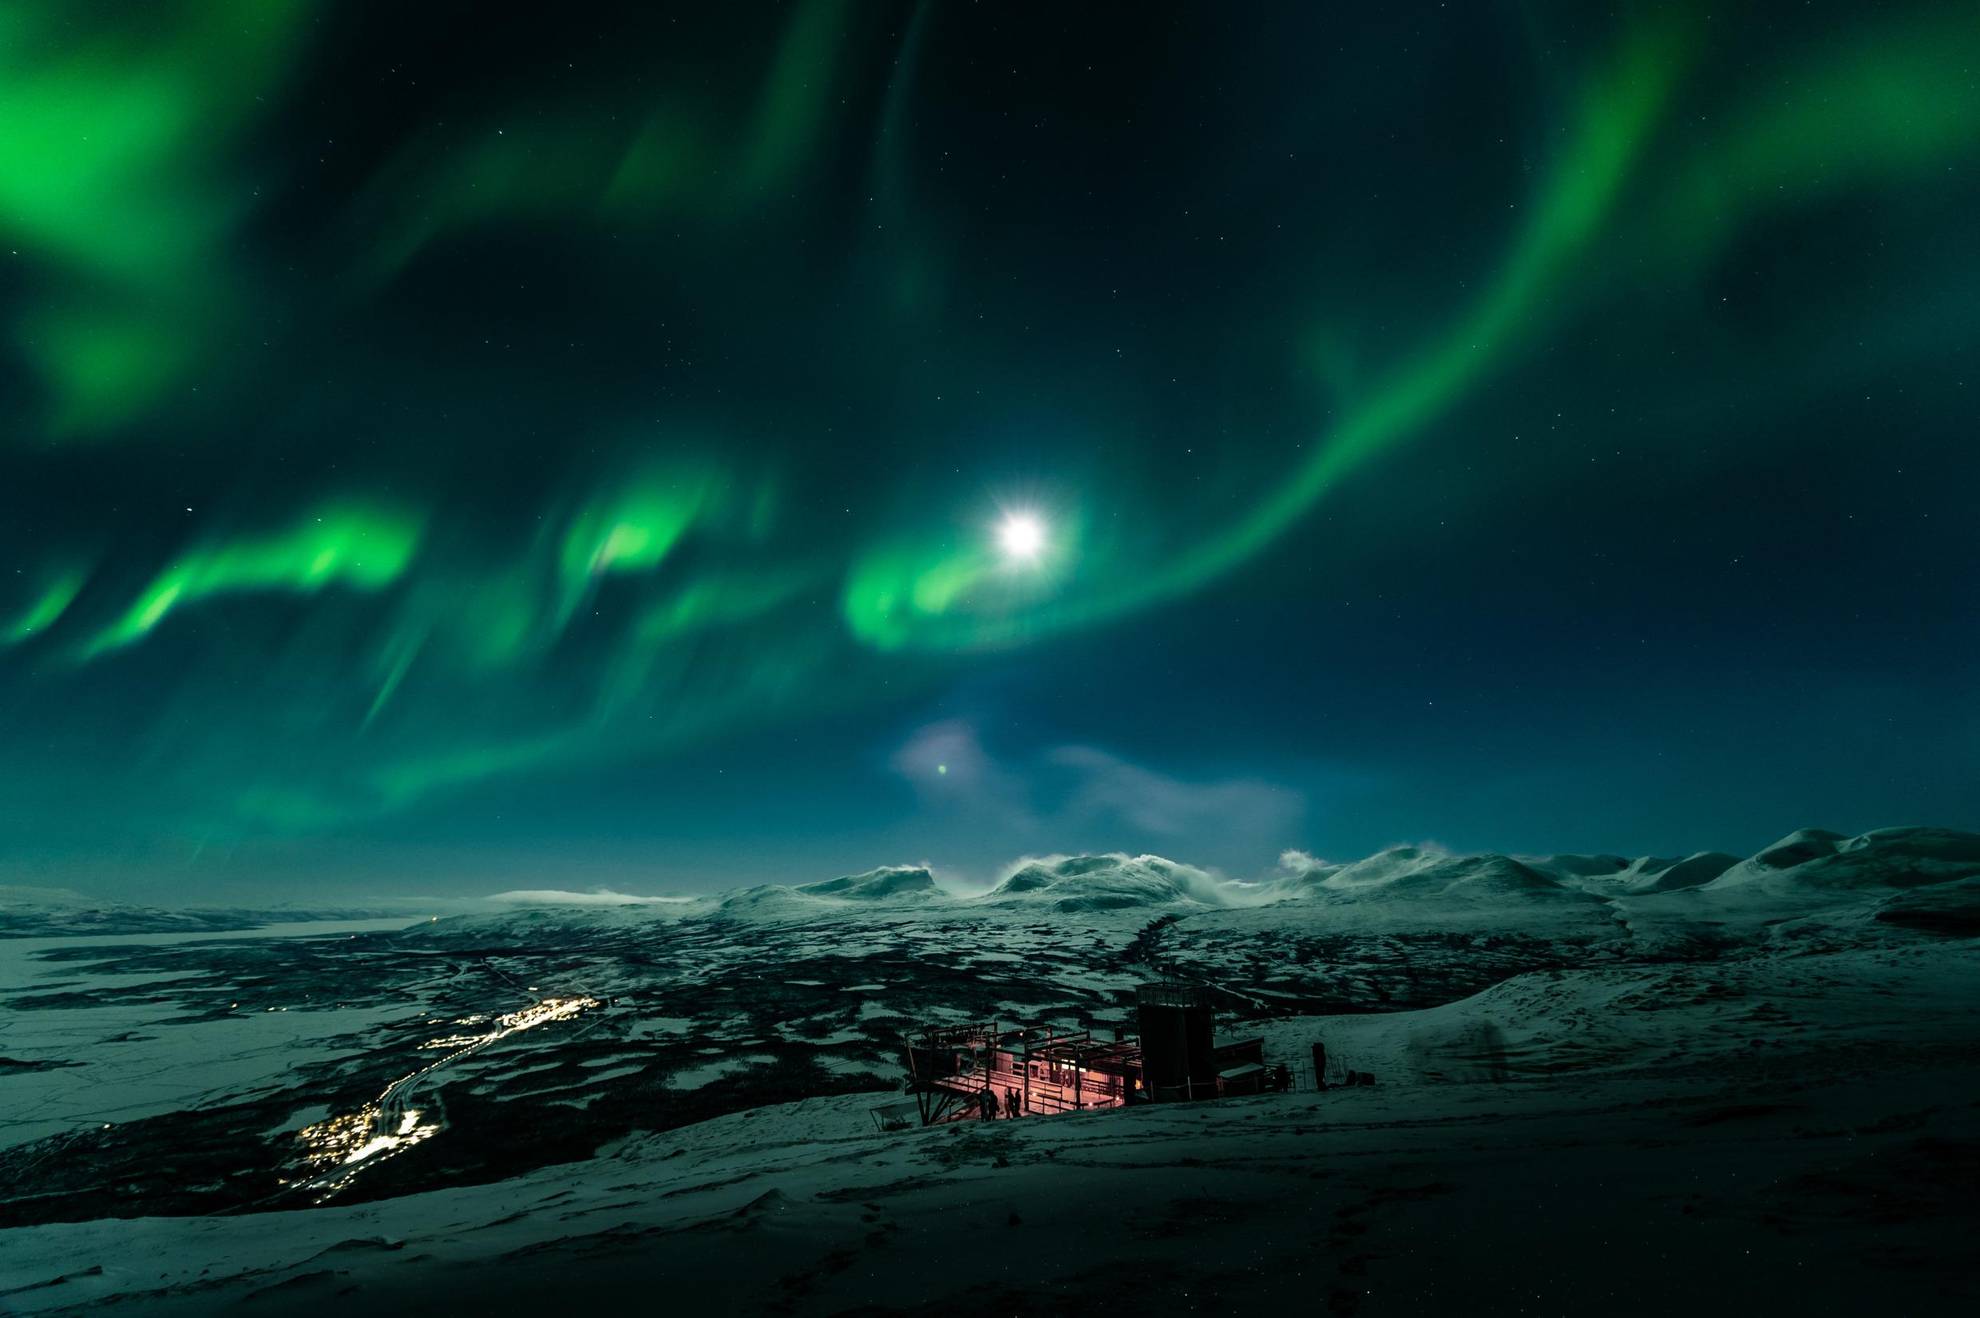 Des aurores boréales au-dessus d'une sky station dans les montagnes.